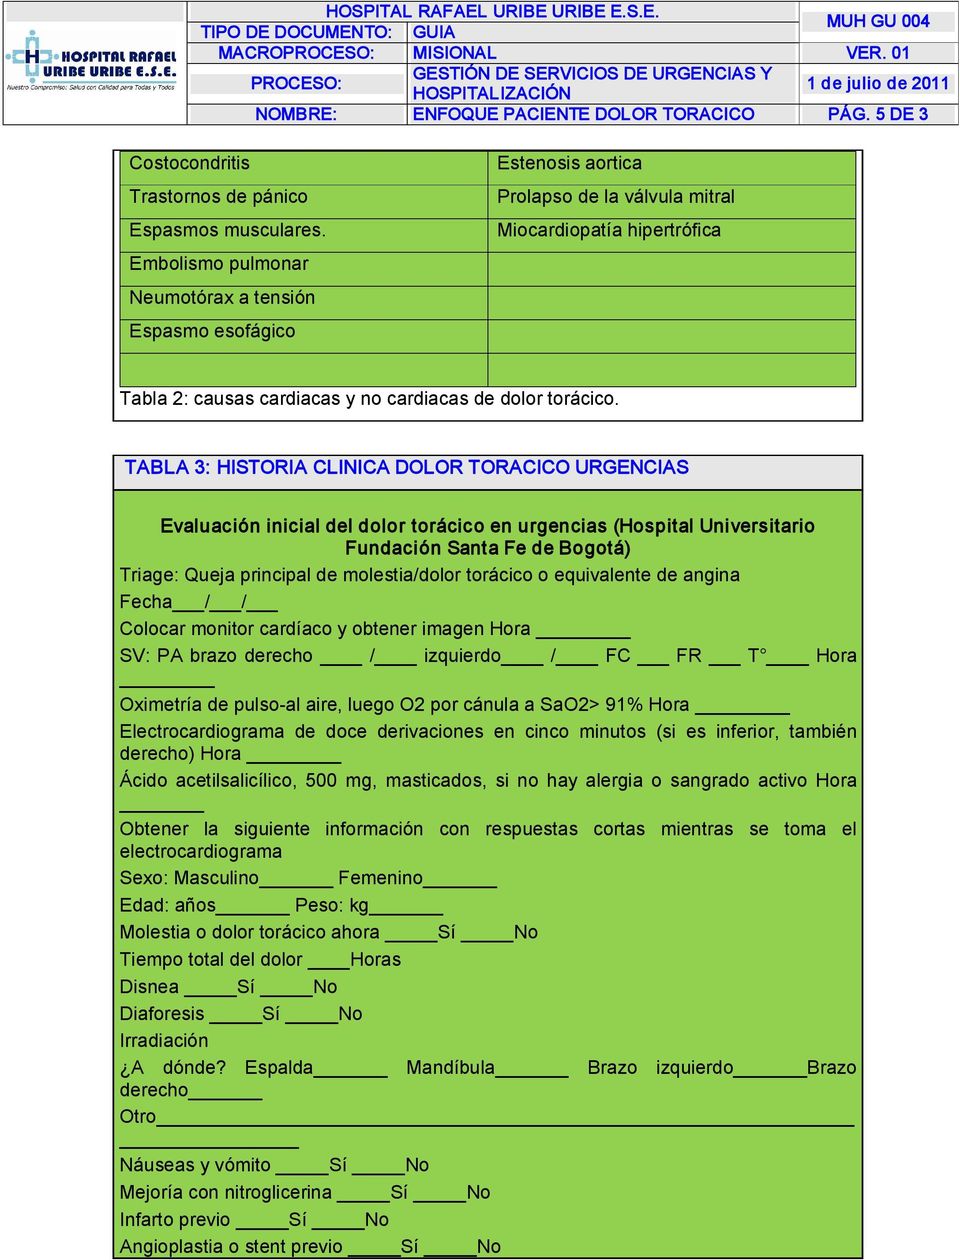 TABLA 3: HISTORIA CLINICA DOLOR TORACICO URGENCIAS Evaluación inicial del dolor torácico en urgencias (Hospital Universitario Fundación Santa Fe de Bogotá) Triage: Queja principal de molestia/dolor